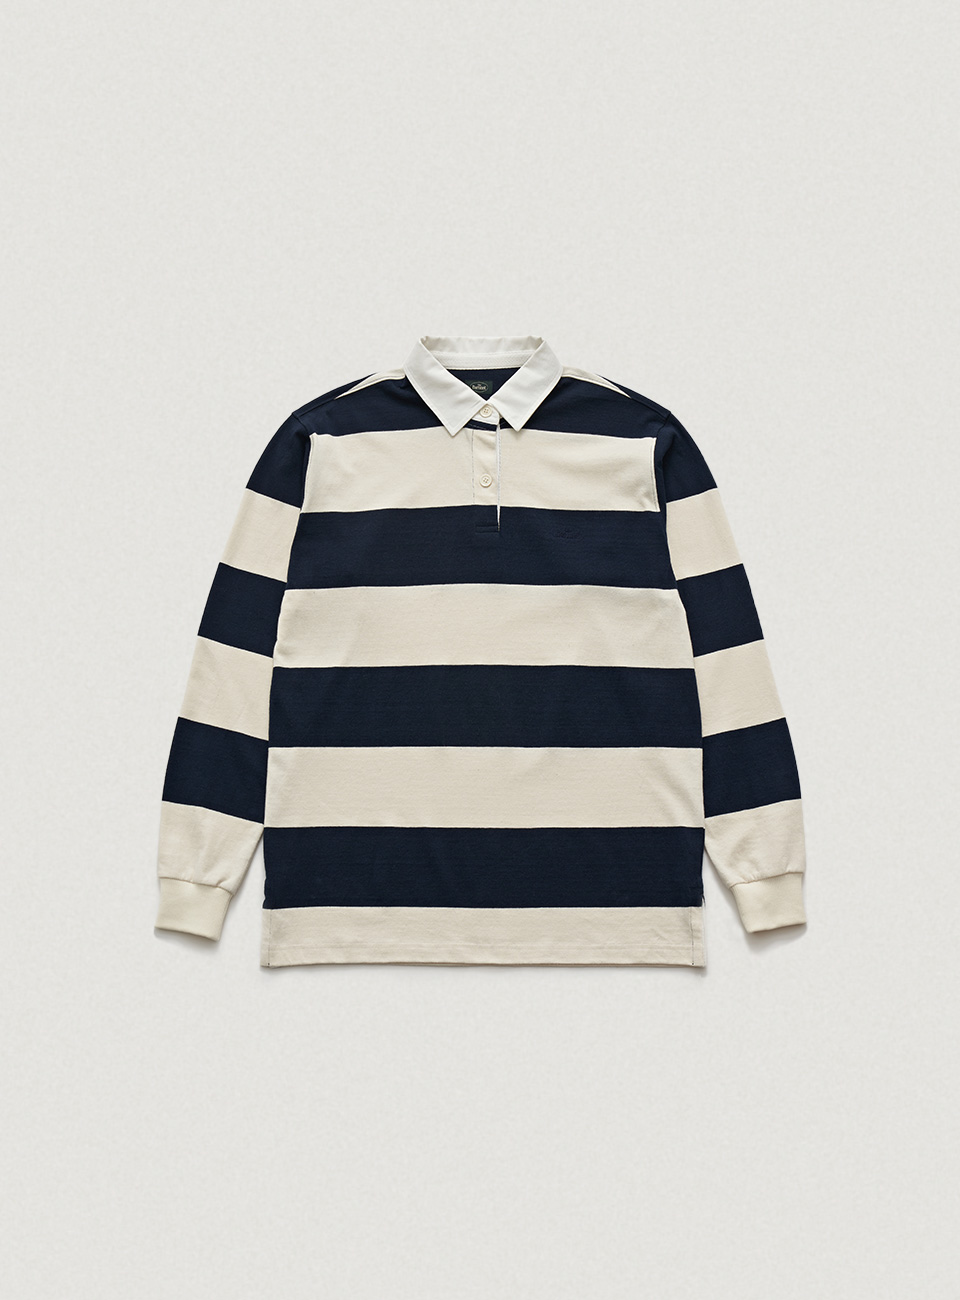 Navy Classic Striped Rugby Shirt [4월 중순 순차 배송]